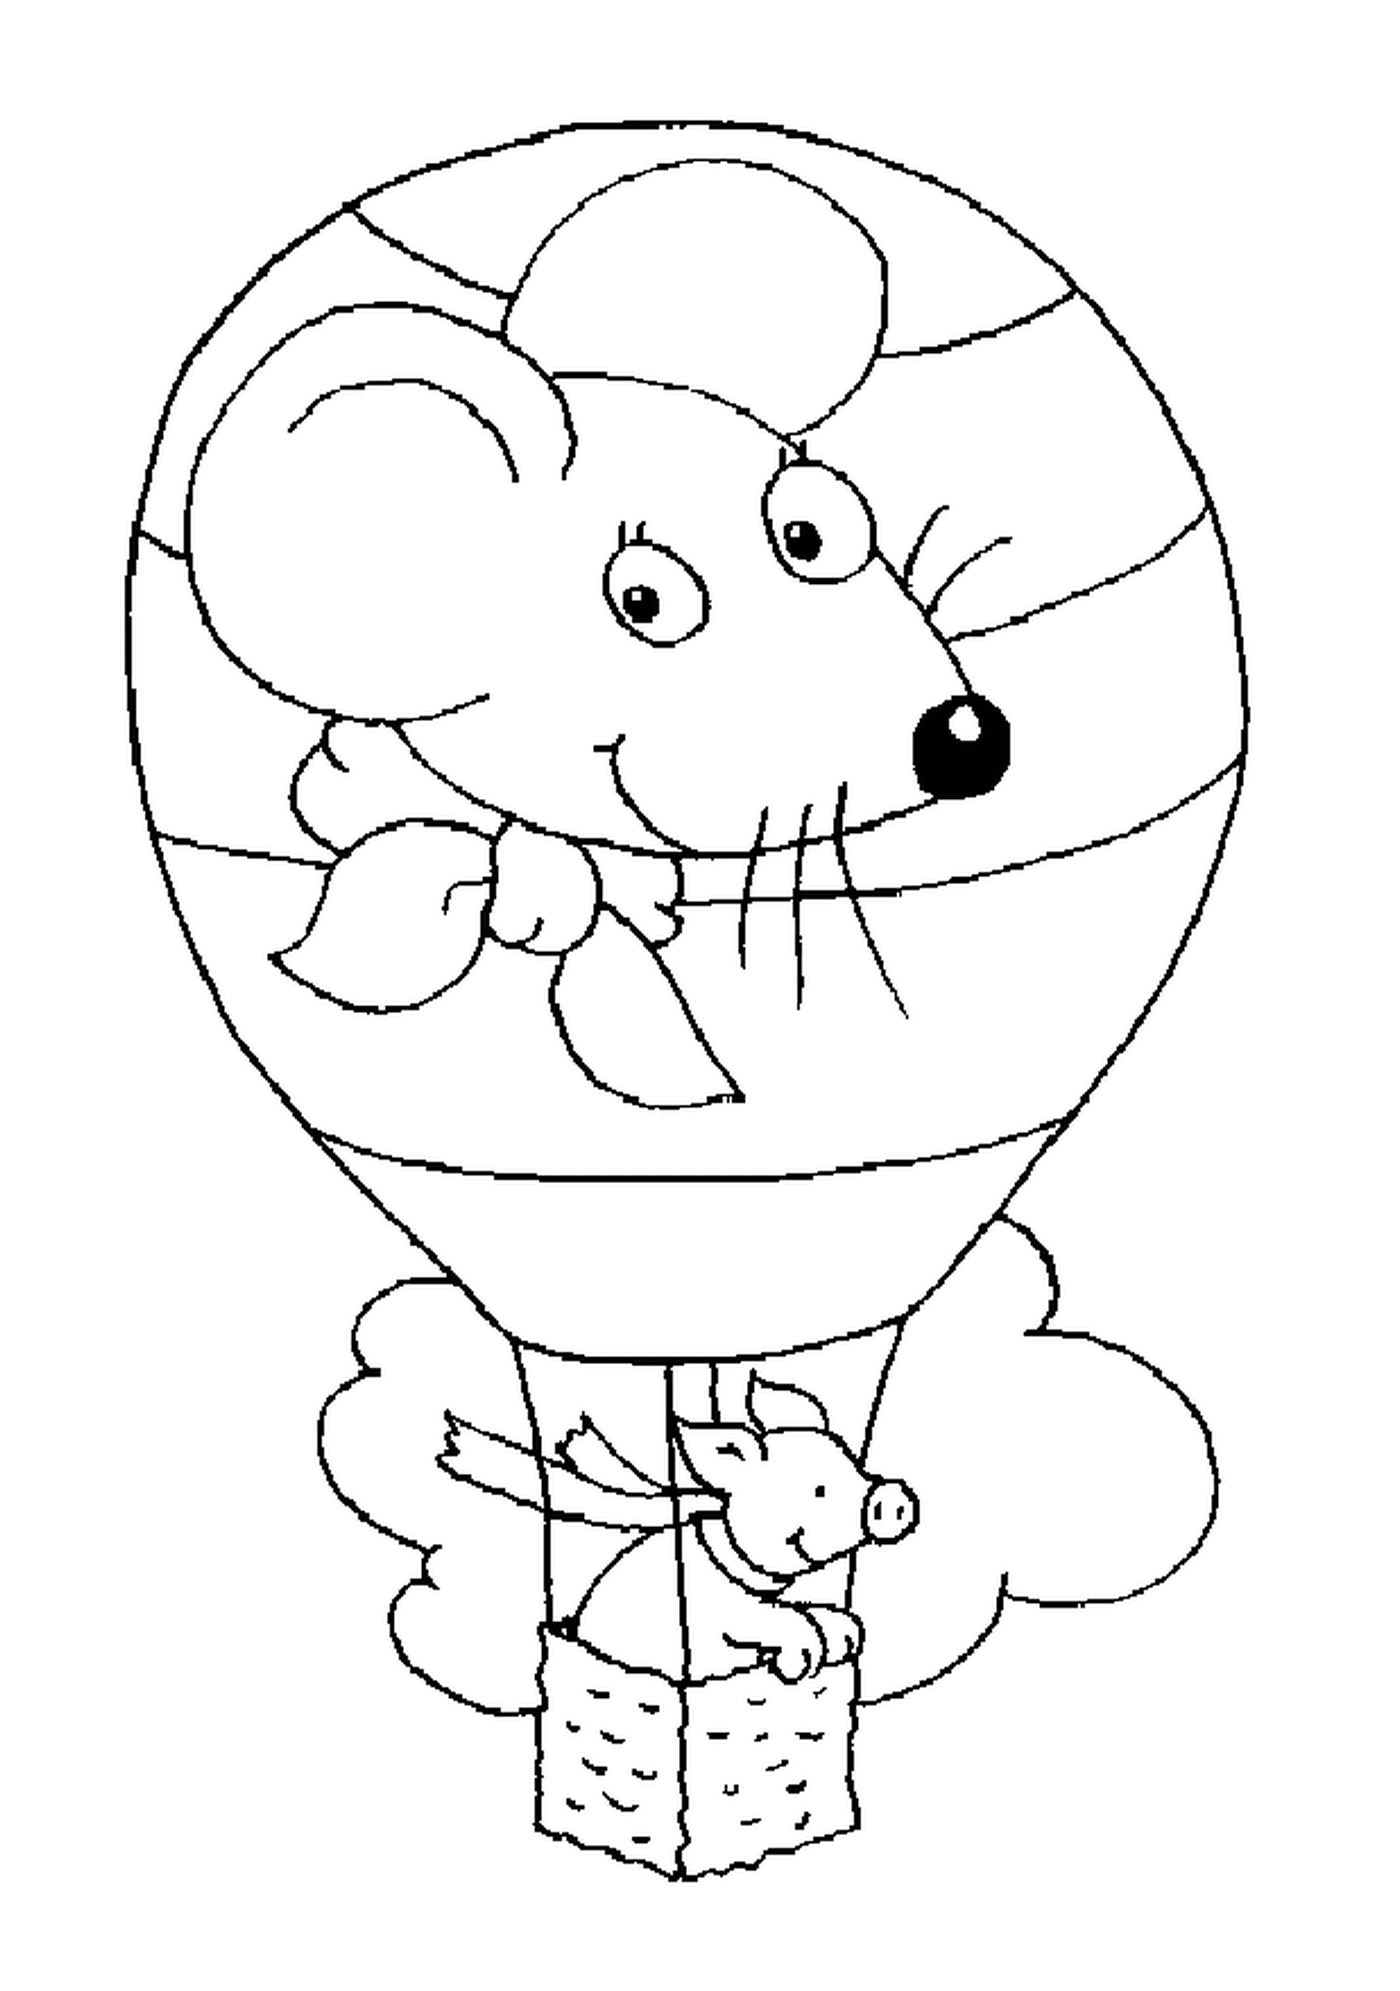  Ein Schwein in einem Heißluftballon mit einem Mauskopf 